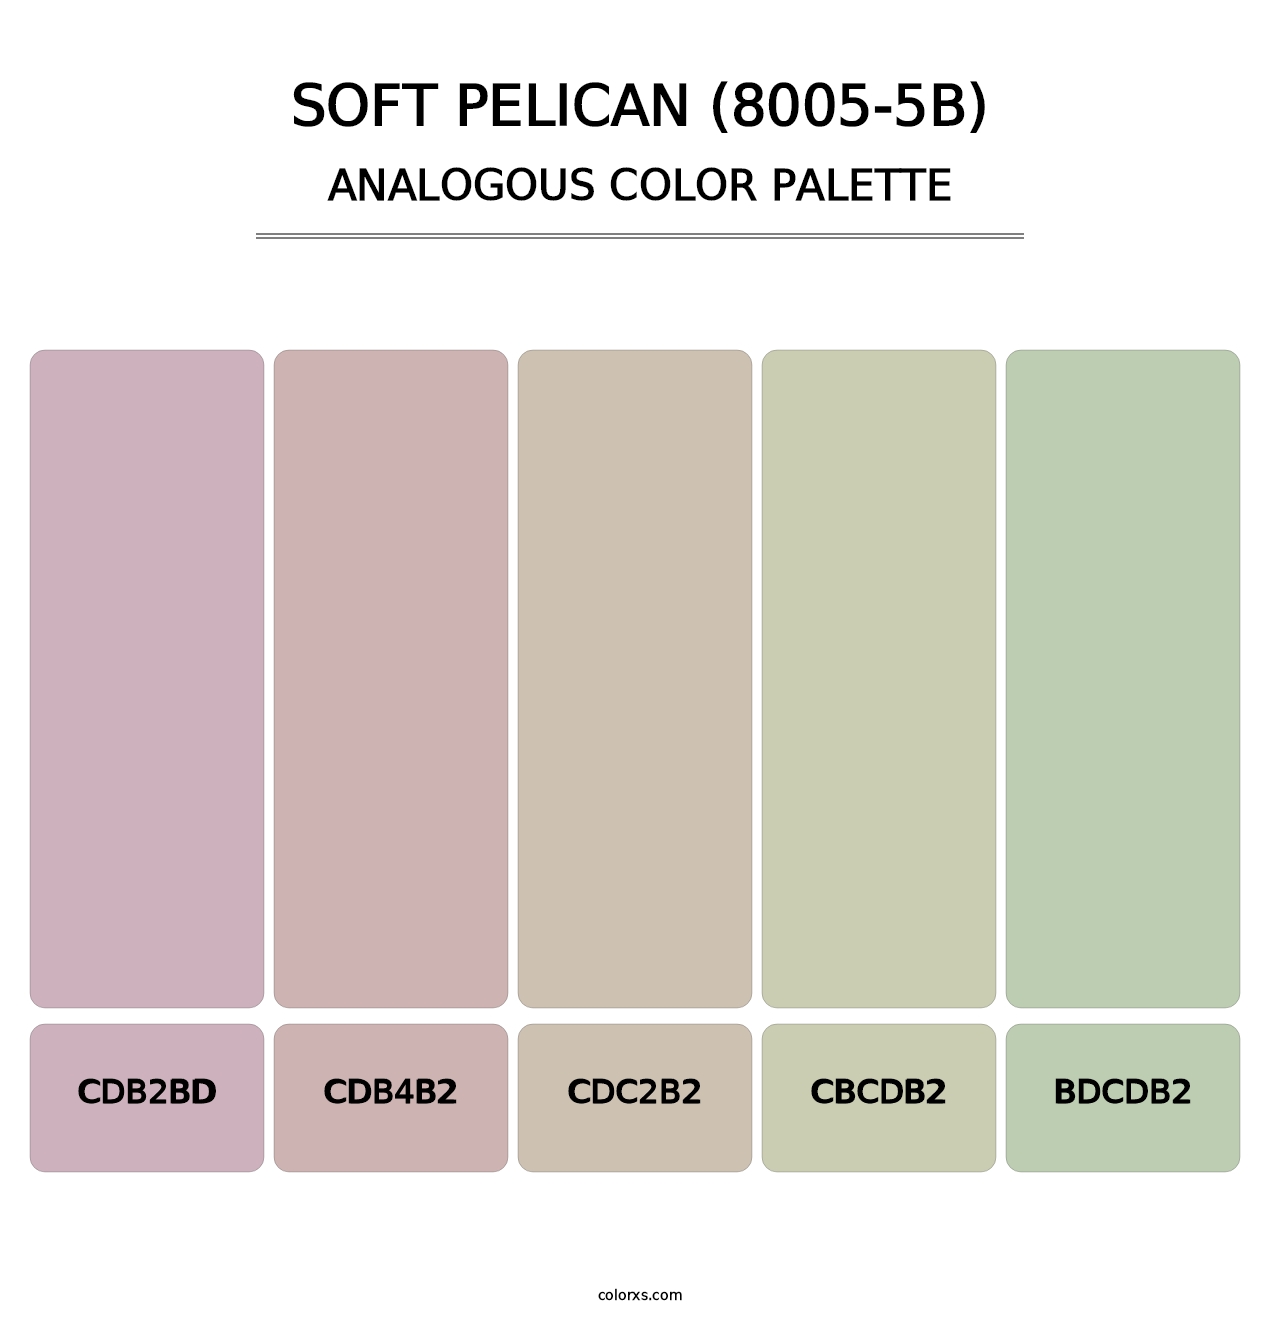 Soft Pelican (8005-5B) - Analogous Color Palette